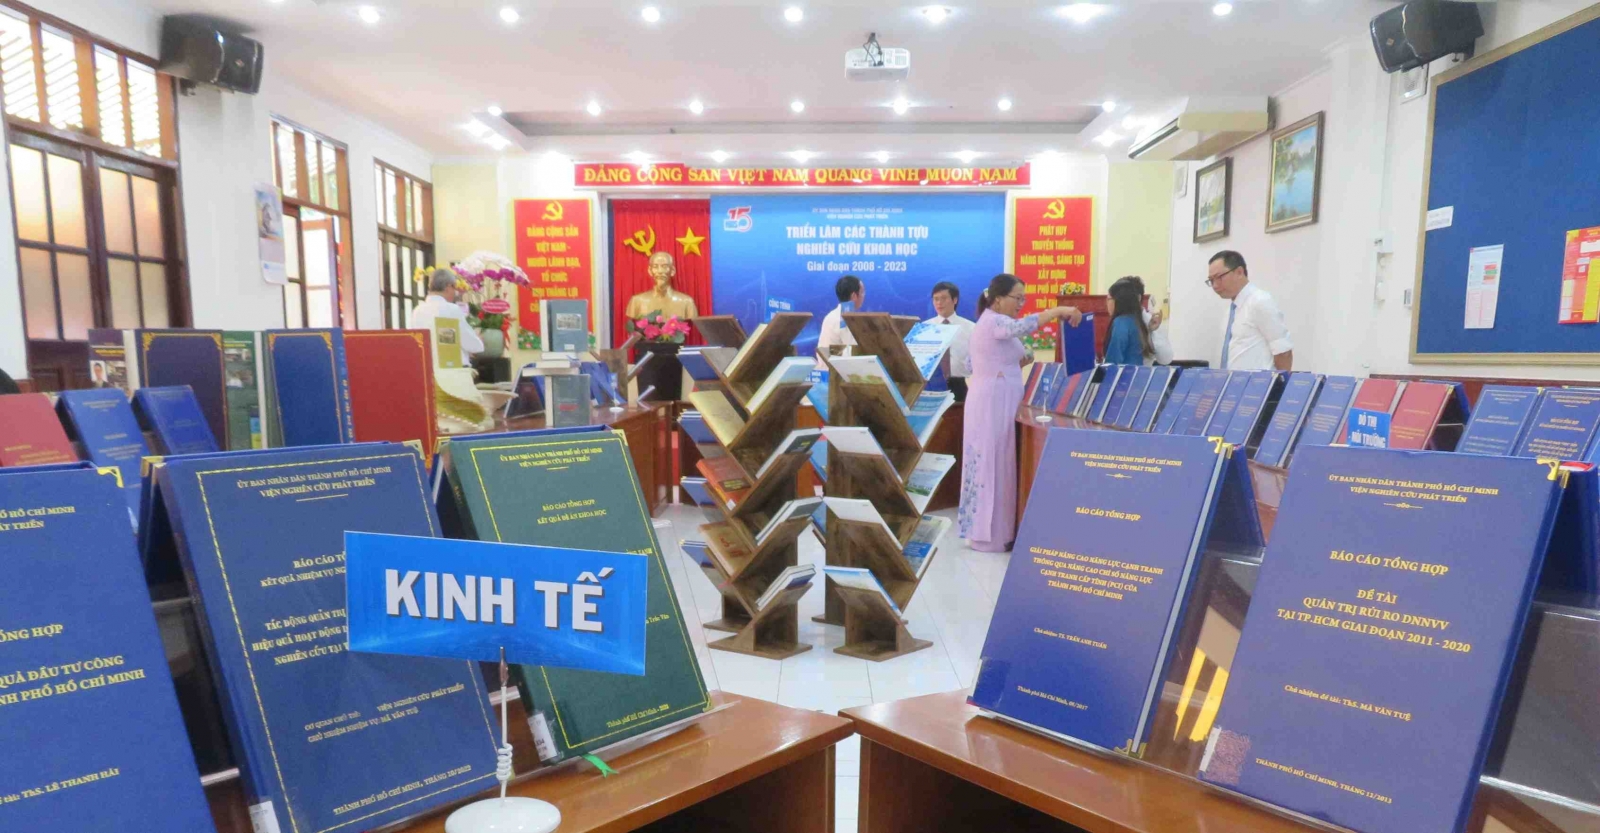 Lễ ký kết thỏa thuận hợp tác giữa Trường Đại học Văn hóa Thành phố Hồ Chí Minh và Viện Nghiên cứu phát triển Thành phố Hồ Chí Minh - Ảnh 2.